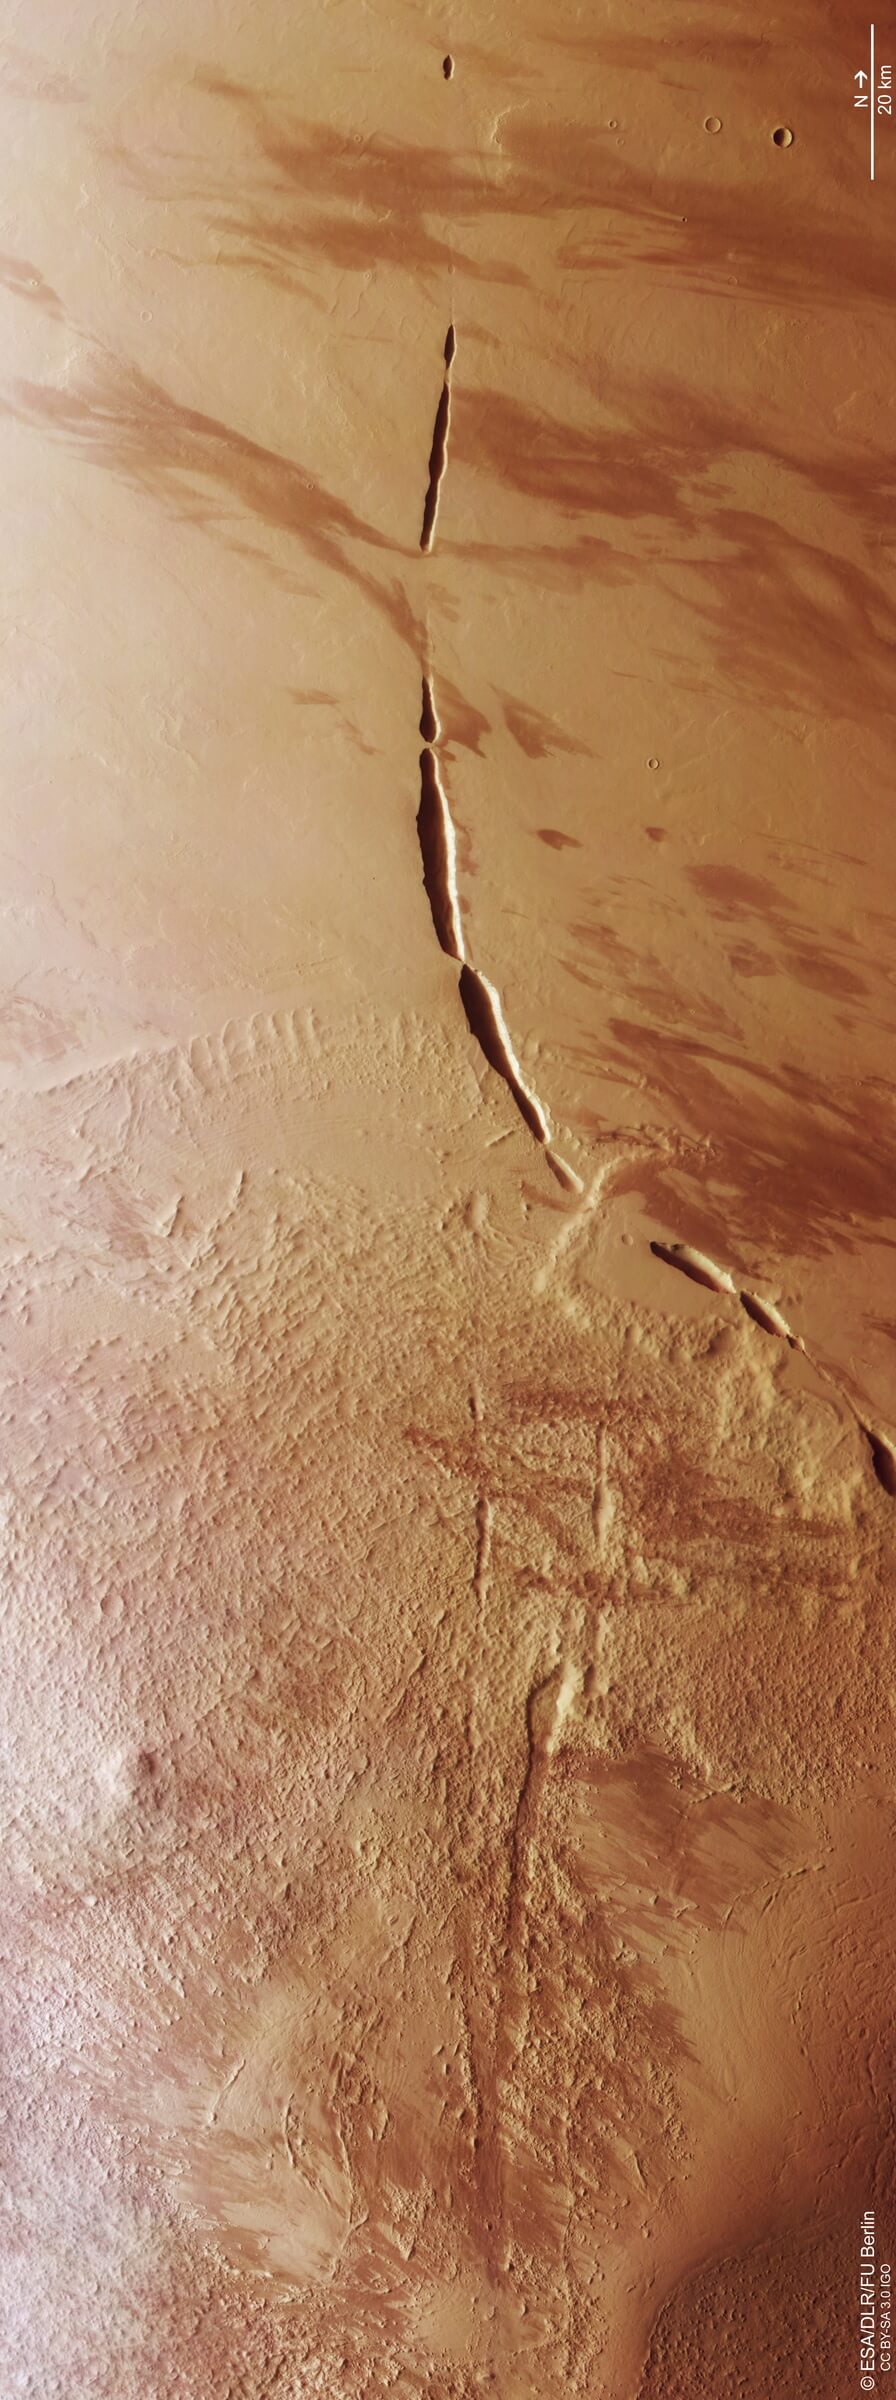 【▲ 火星探査機「Mars Express」の高解像度ステレオカメラ「HRSC」で取得したデータを使って作成されたアガニッペ地溝帯（Aganippe Fossa）の画像。公開されたオリジナルの画像を左に90度回転したもの（Credit: ESA/DLR/FU Berlin; 画像加工: sorae編集部）】